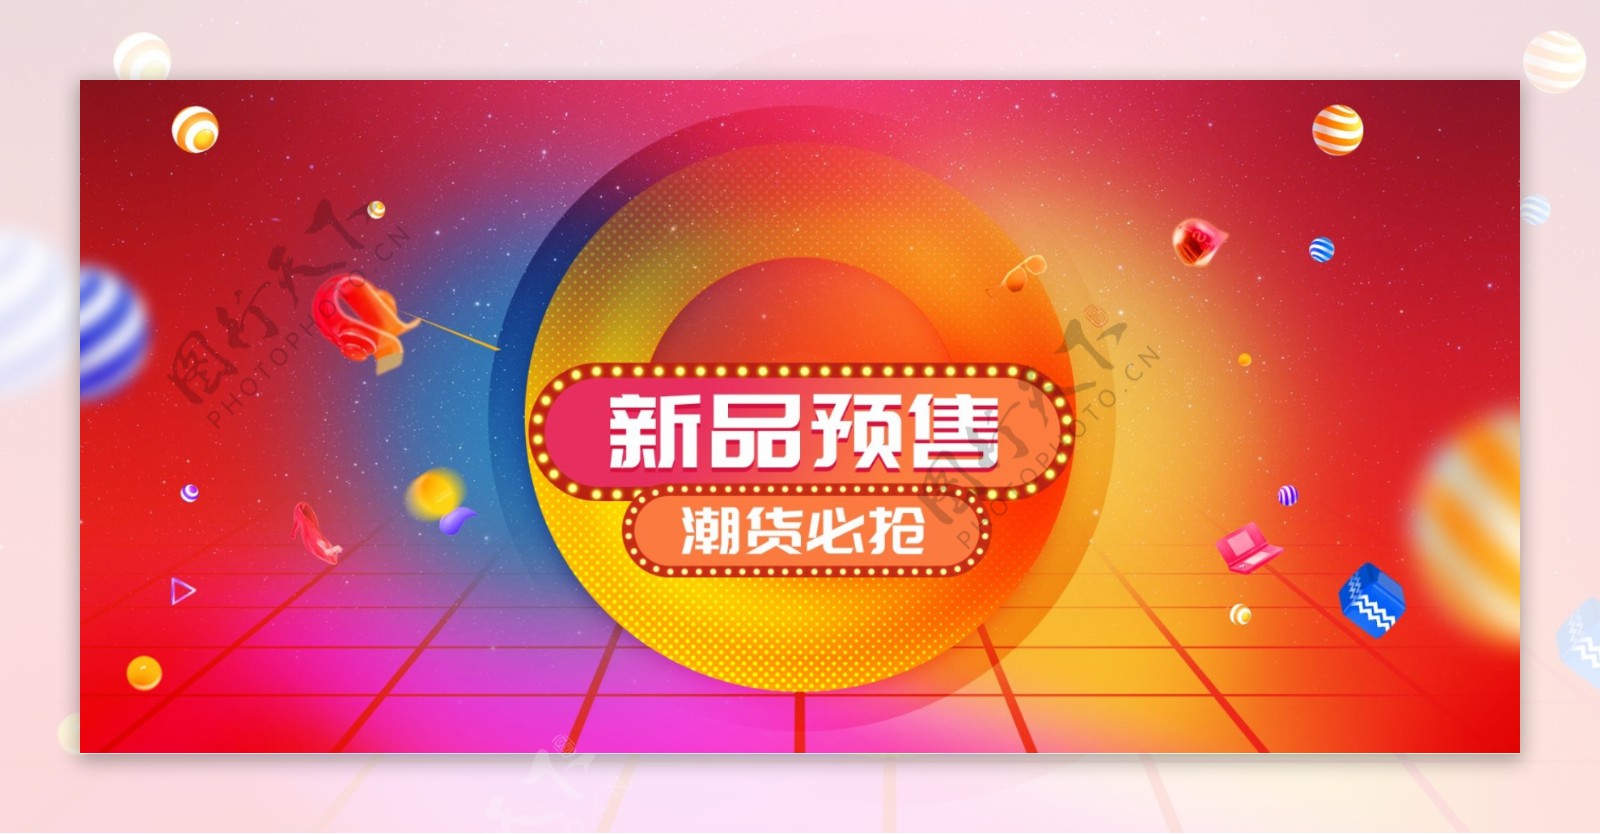 天猫淘宝新品预售黄红色变幻背景海报